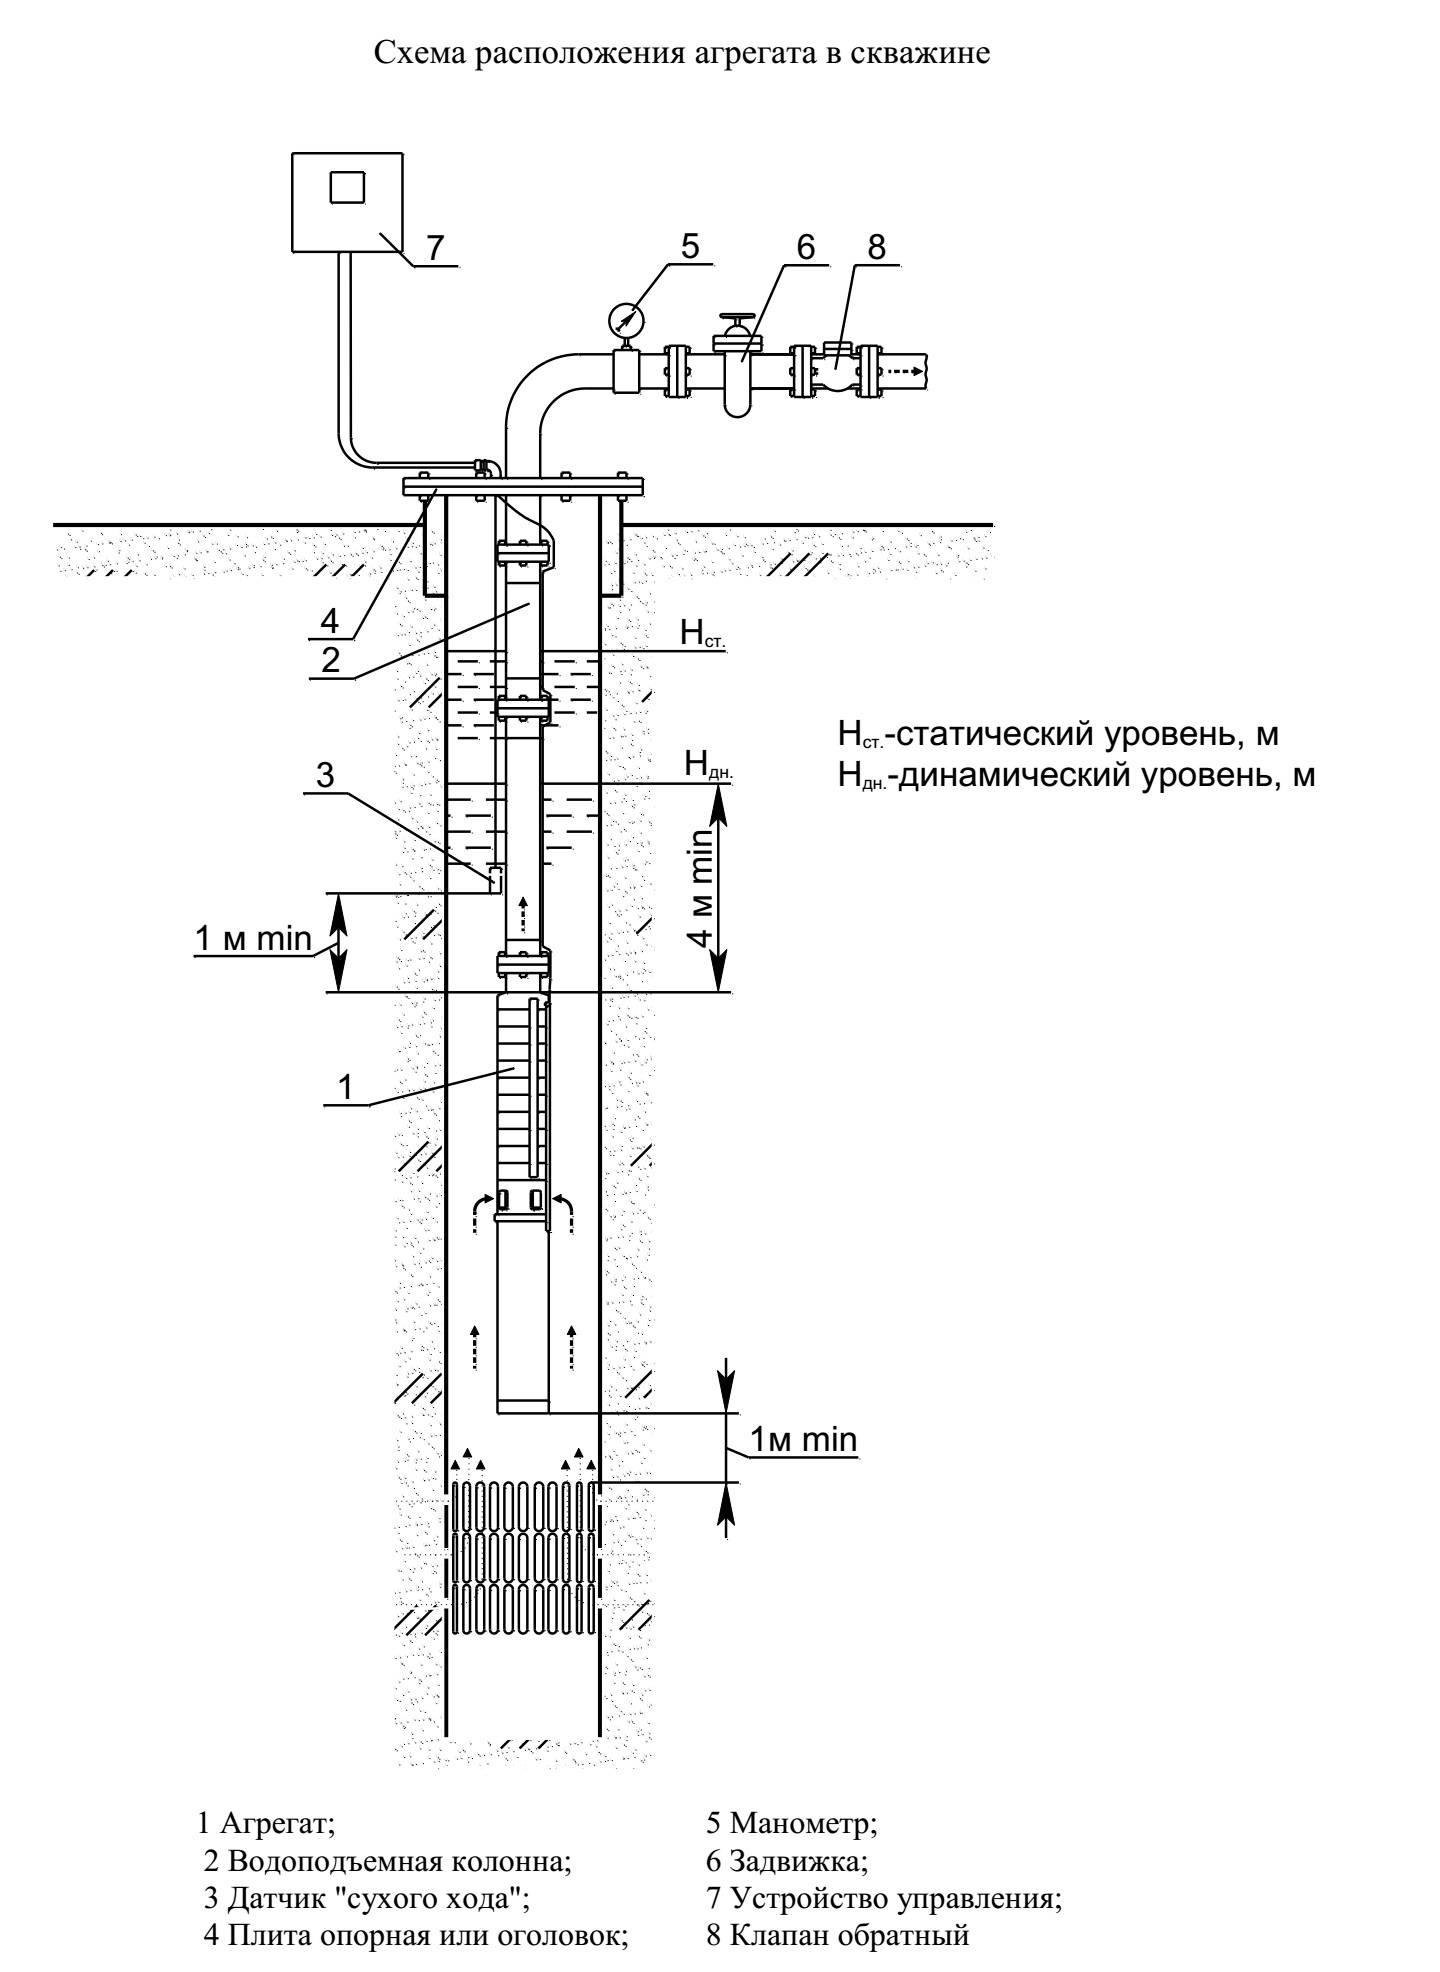 Как обслуживать скважину - проектирование и бурение скважин,  ремонт скважин, геотермальное отопление